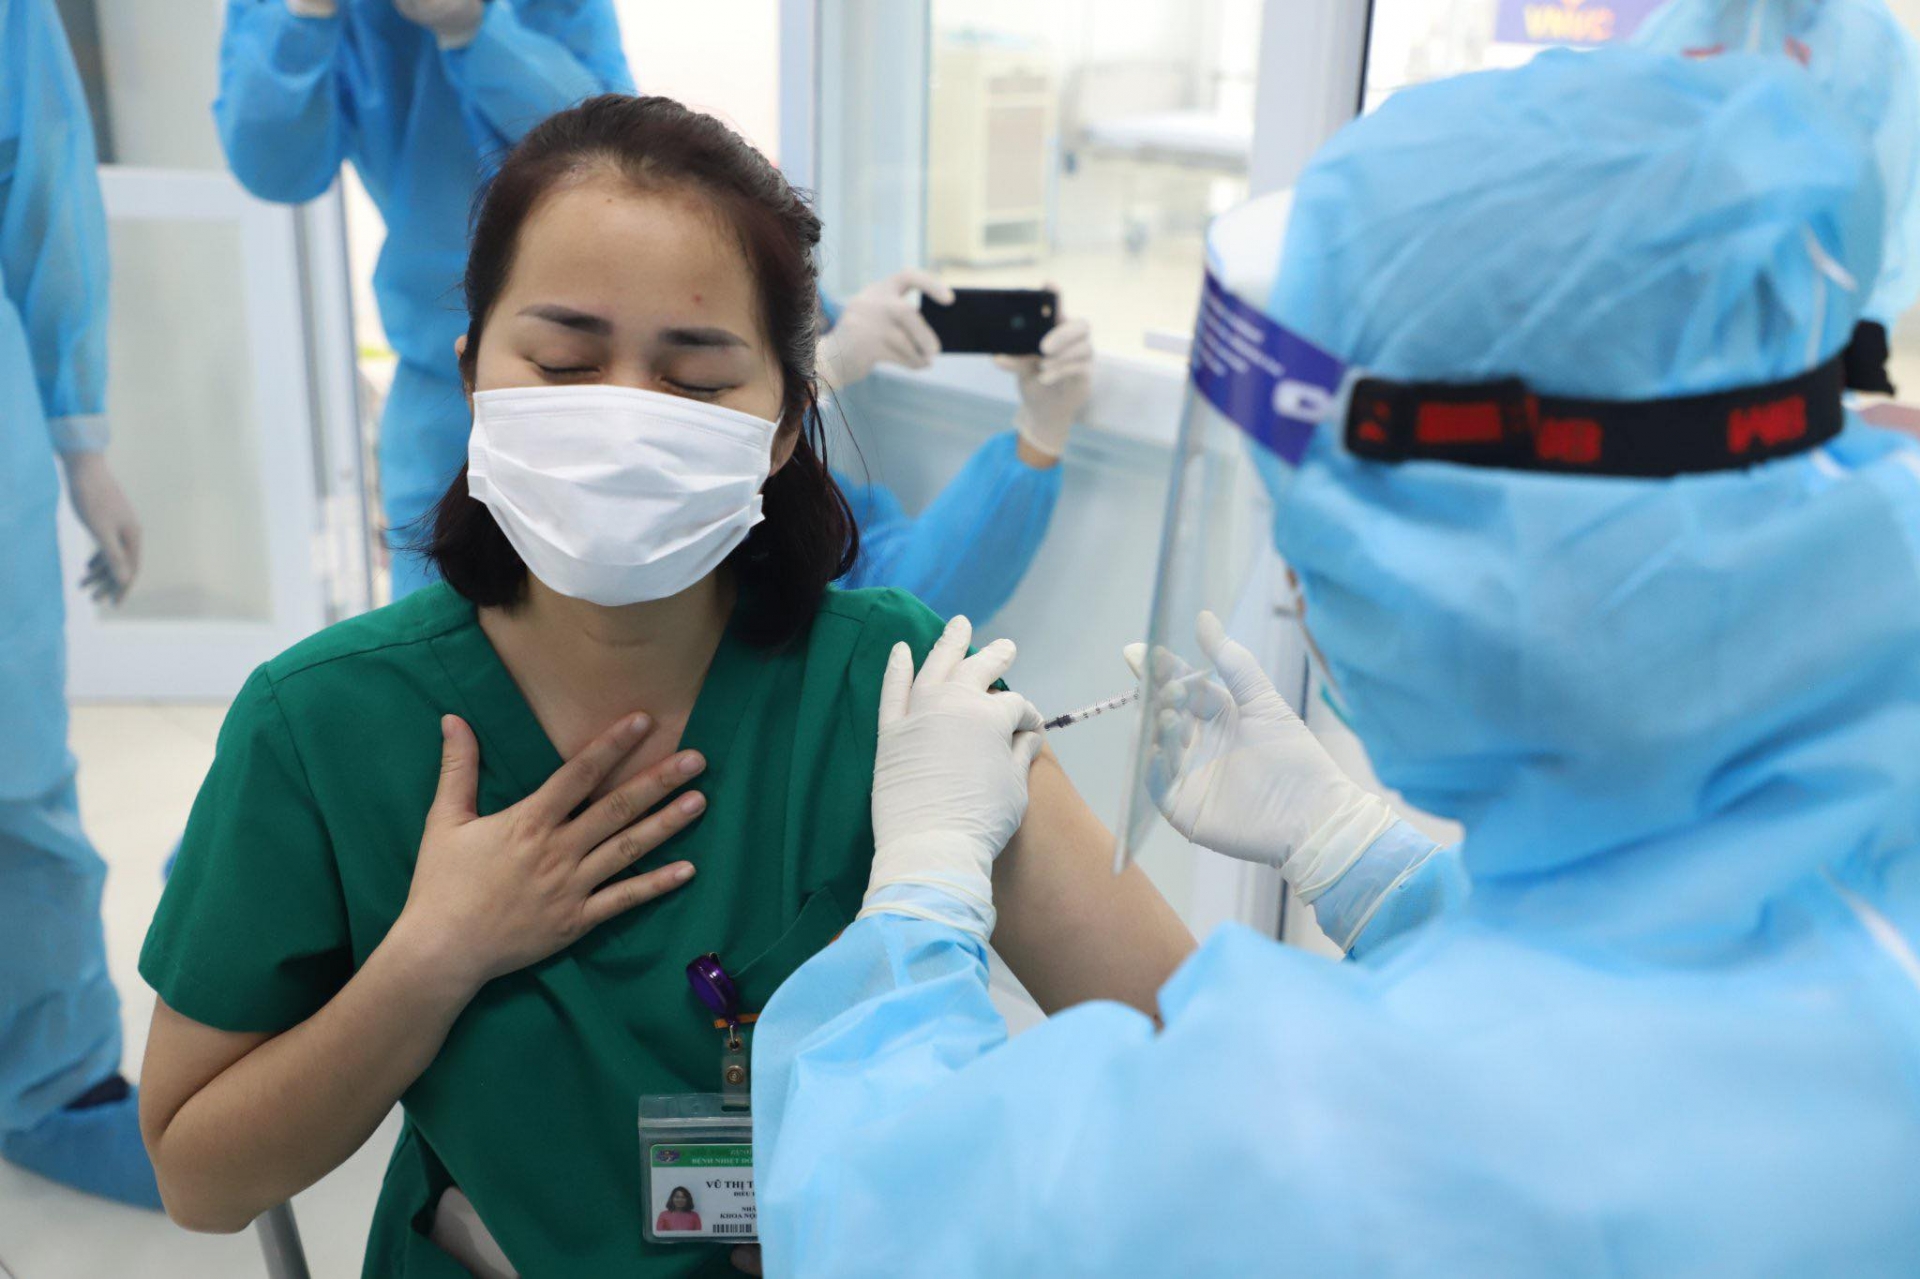  Danh sách 16 nhóm đối tượng được ưu tiên tiêm chủng vaccine COVID-19 tại Việt Nam - Ảnh 3